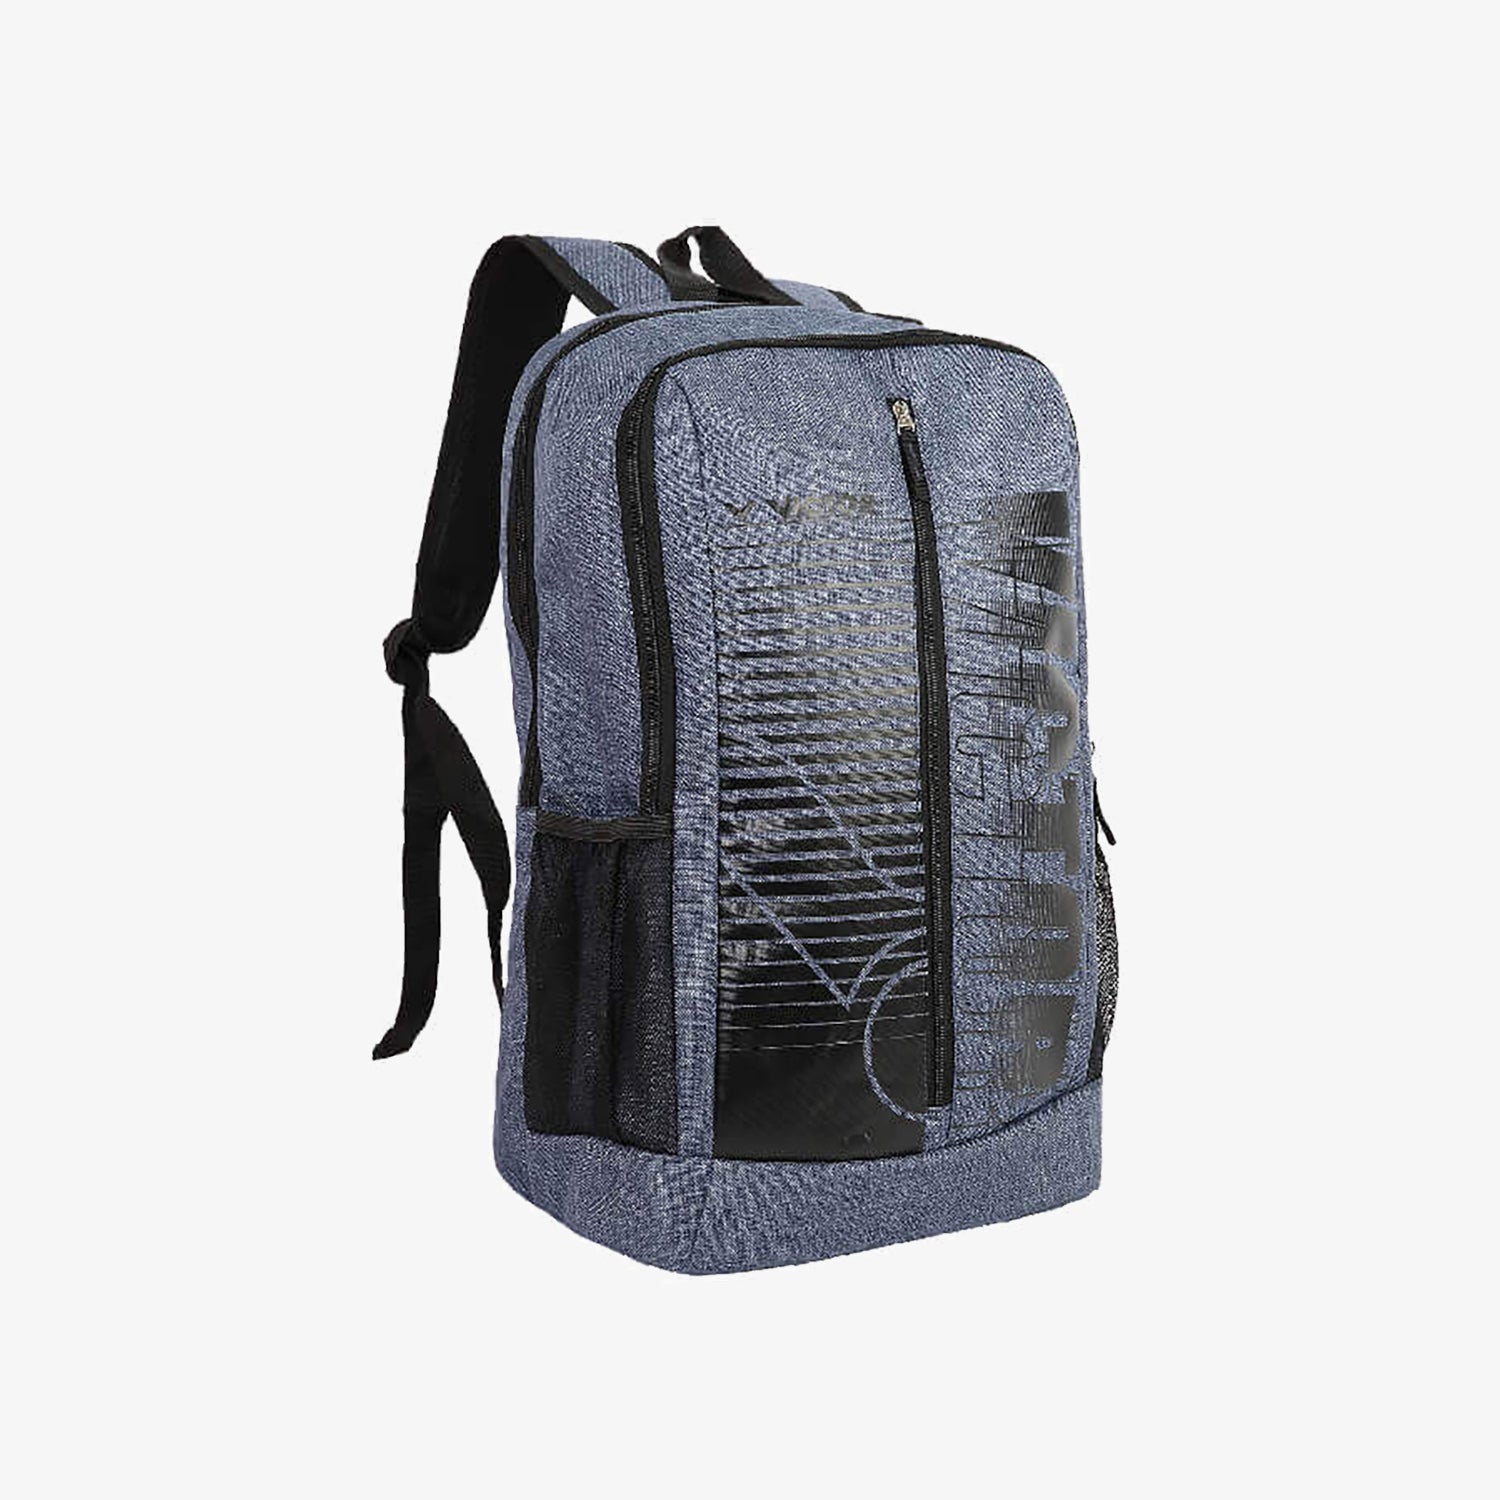 Victor Backpack BR6017-K (Grey)